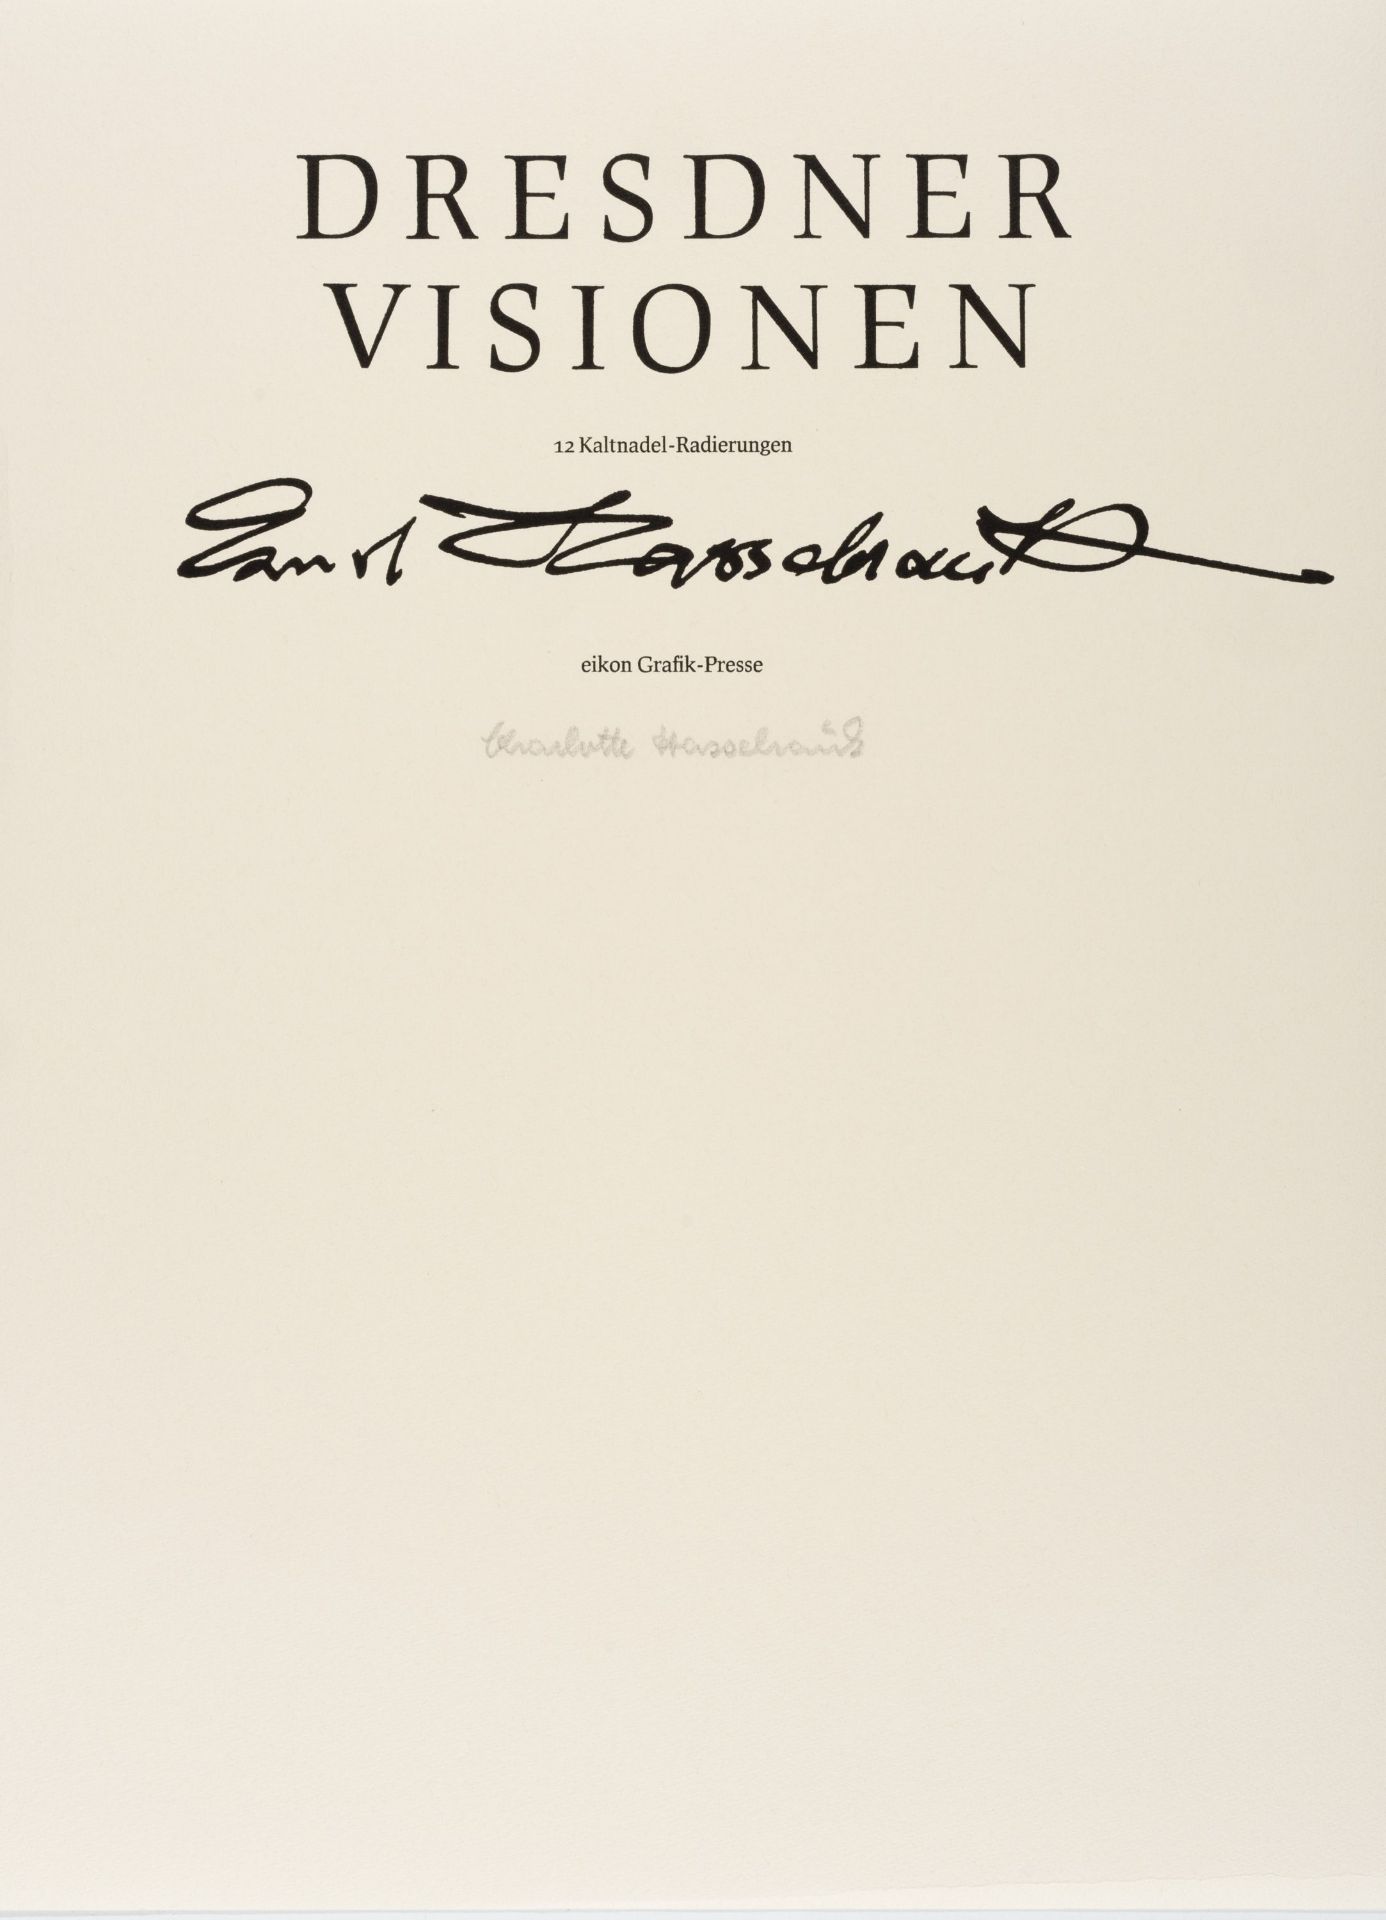 Ernst Hassebrauk "Dresdner Visionen". 1947/1980.